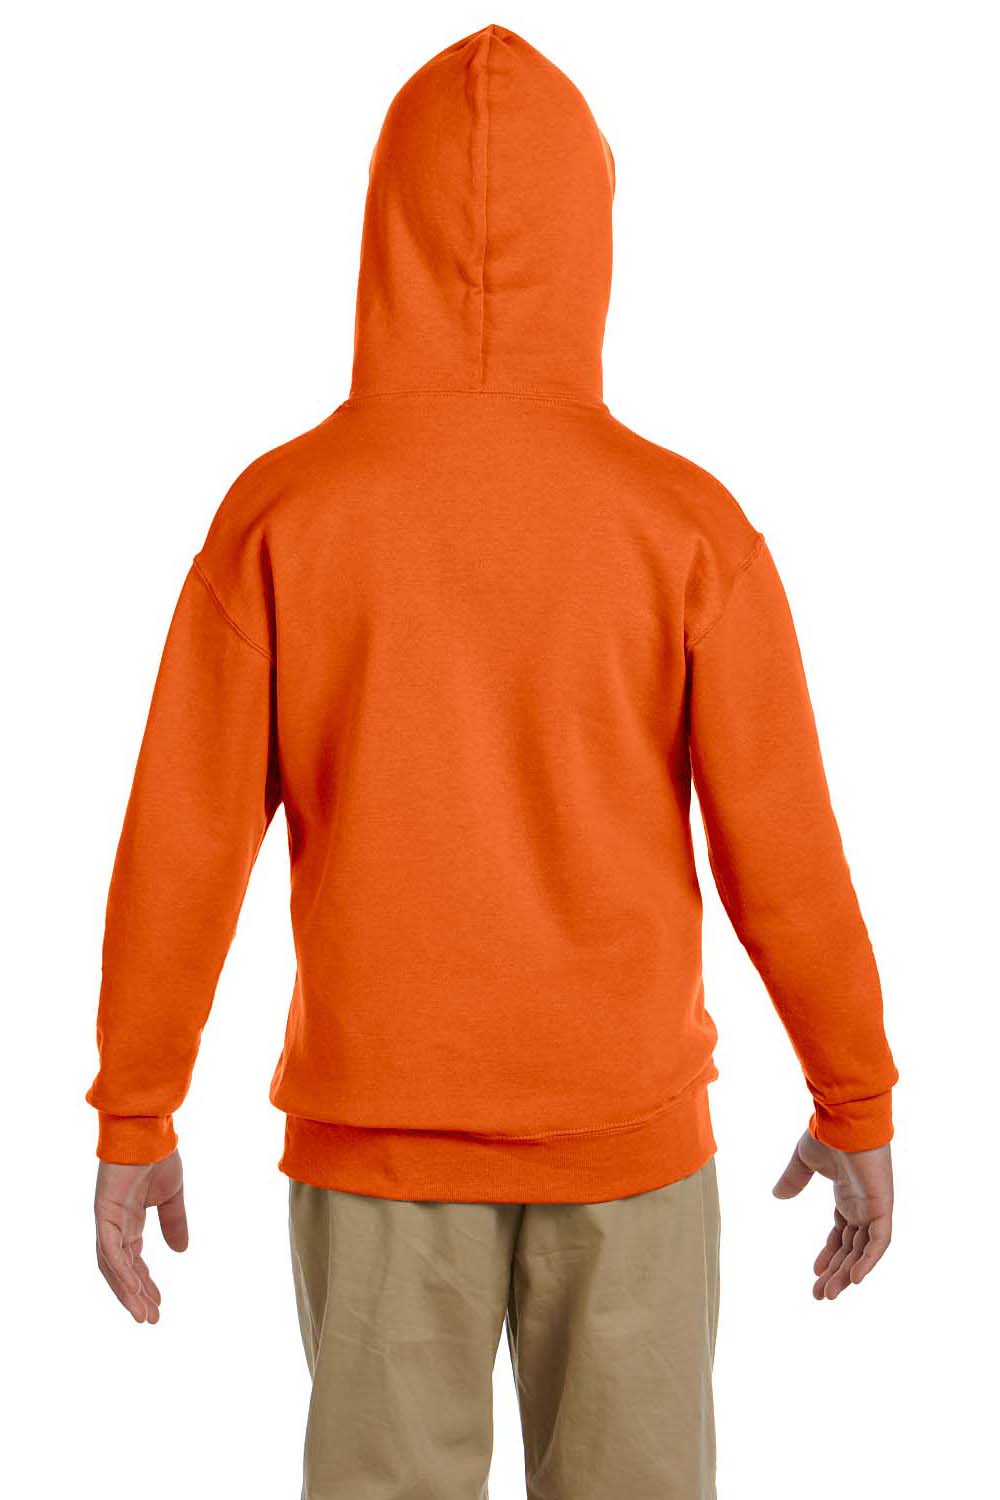 Jerzees 996Y Youth NuBlend Fleece Hooded Sweatshirt Hoodie Safety Orange Back